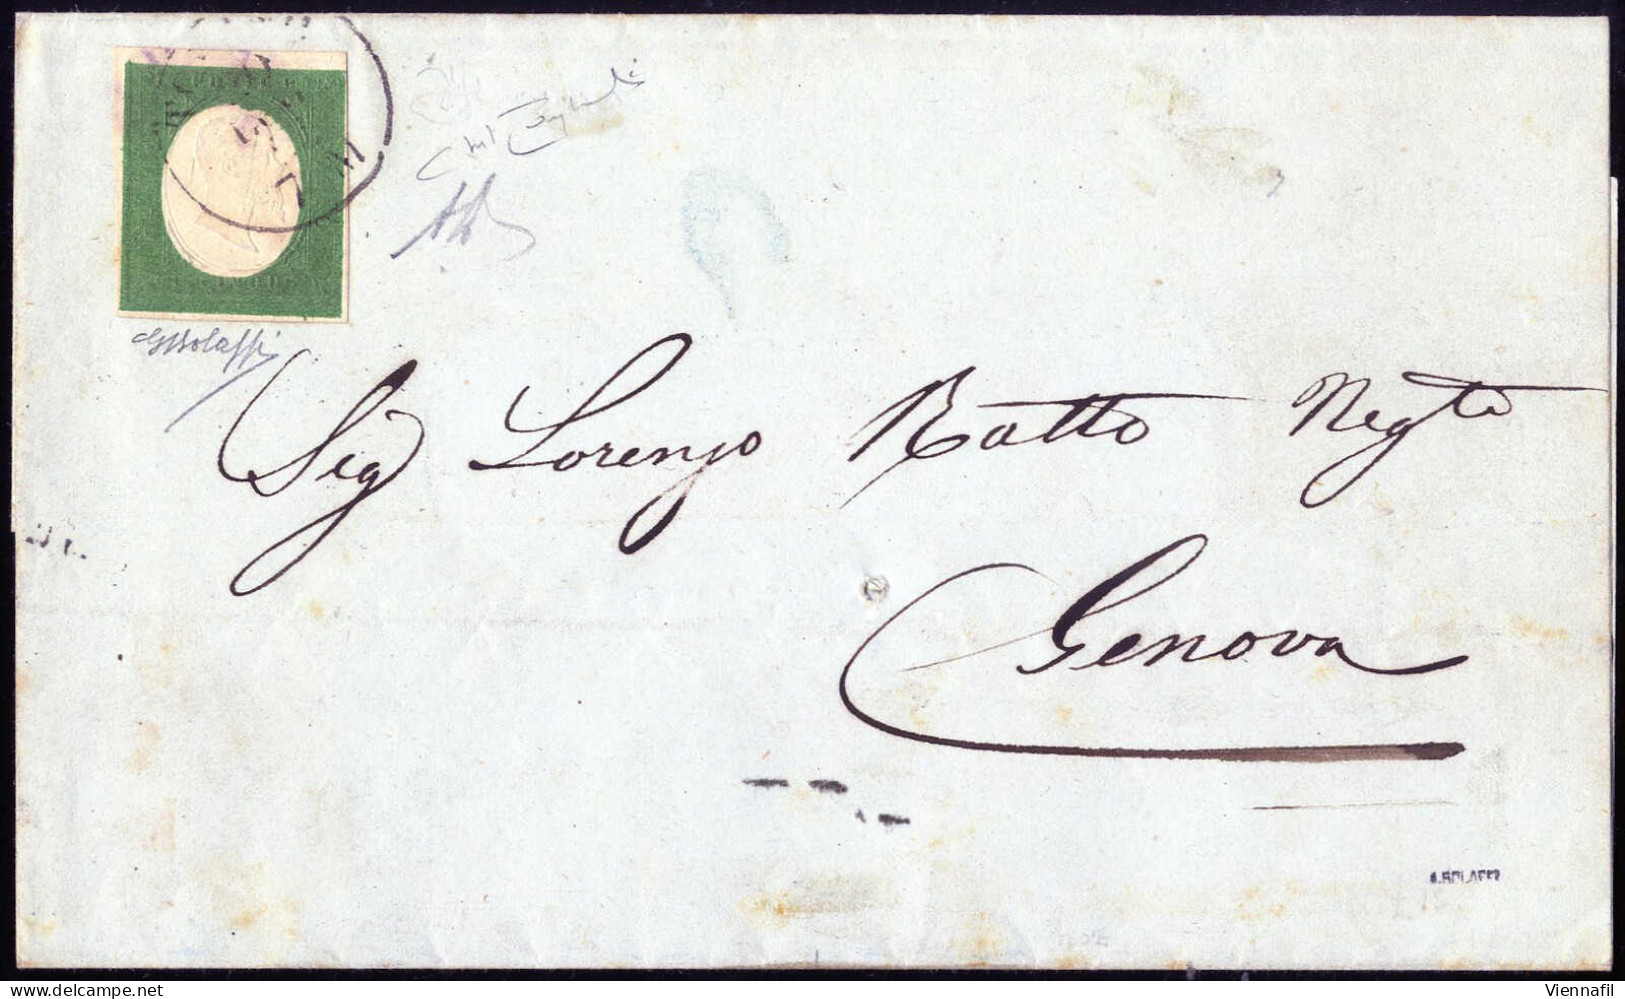 Cover 1855, Circolare Da Torino Il 19.7 Per Genova Affrancata Con 5 C. Verde Azzurro Isolato, Firmata AD E Bolaffi, Cert - Sardinia